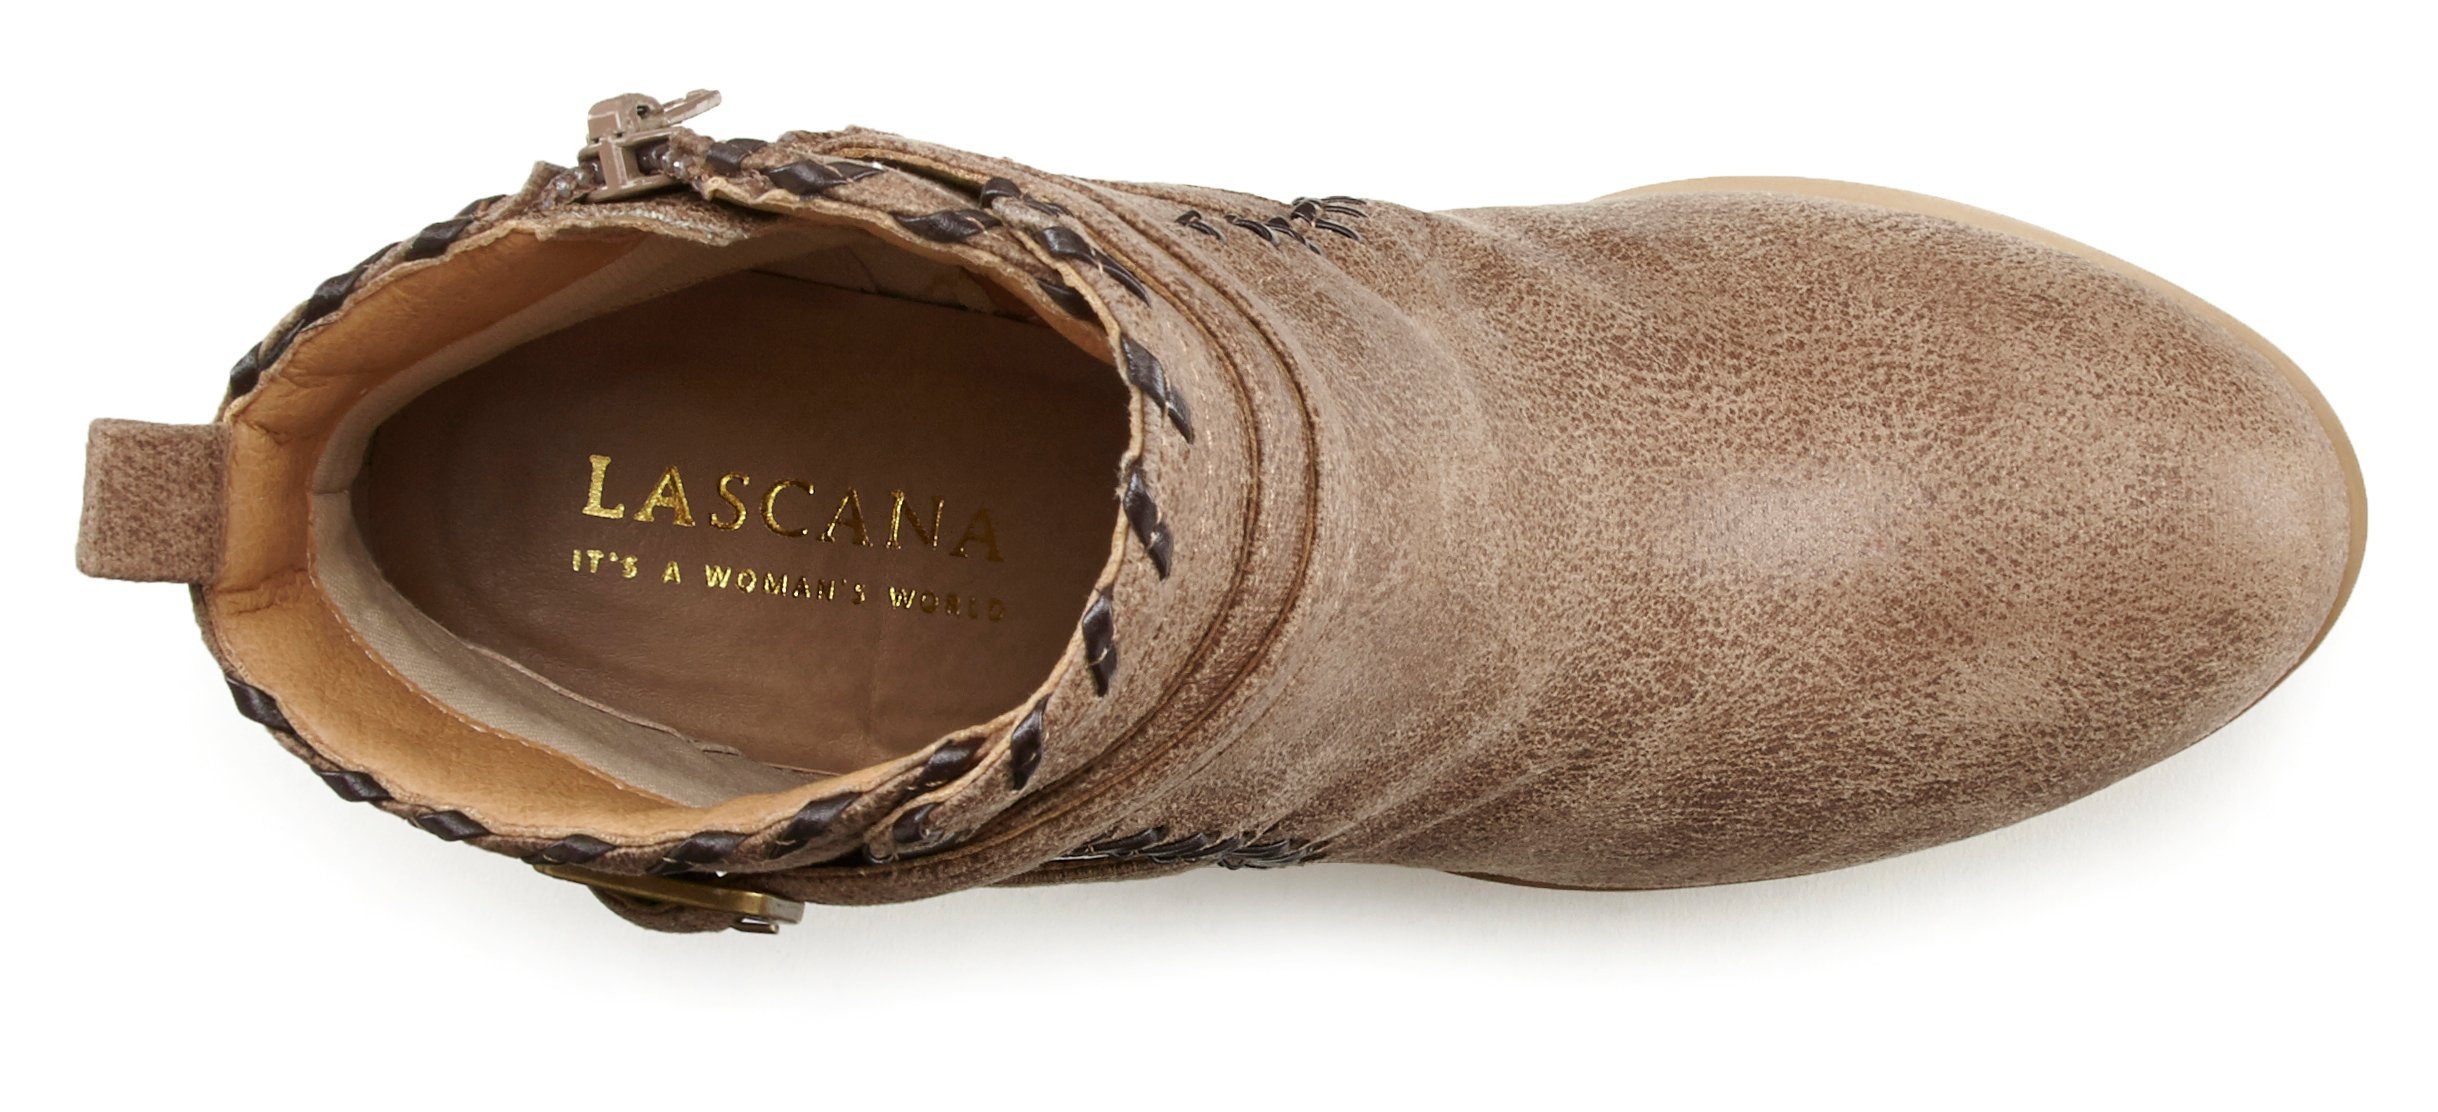 Vintage-Look Boot, Ankle camelfarben mit Blockabsatz, im Stiefel LASCANA High-Heel-Stiefelette bequemen